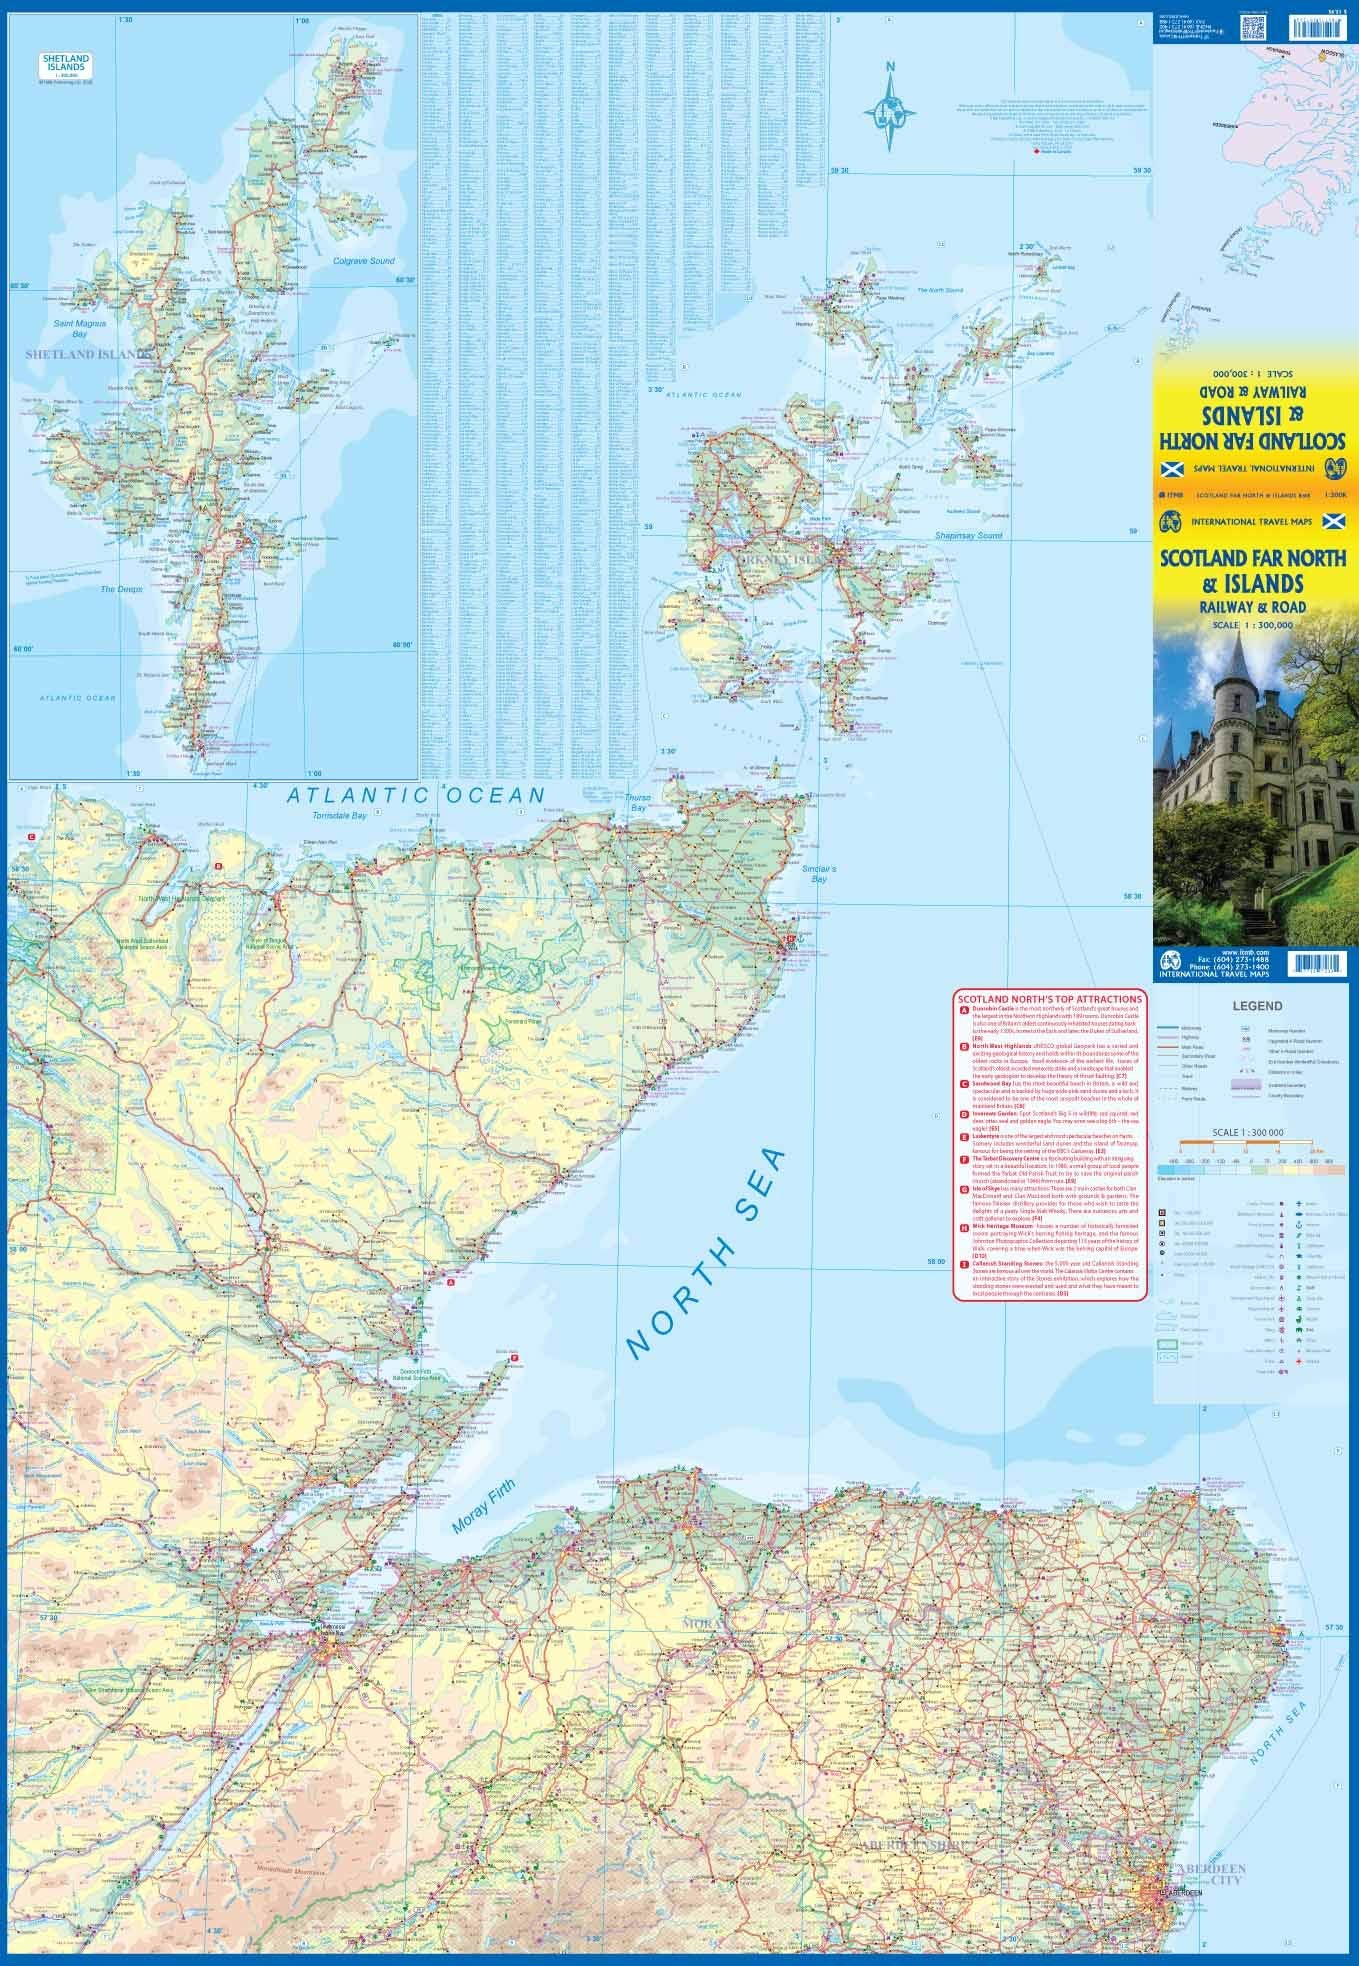 Scotland Far North & Islands ITM Map 1e